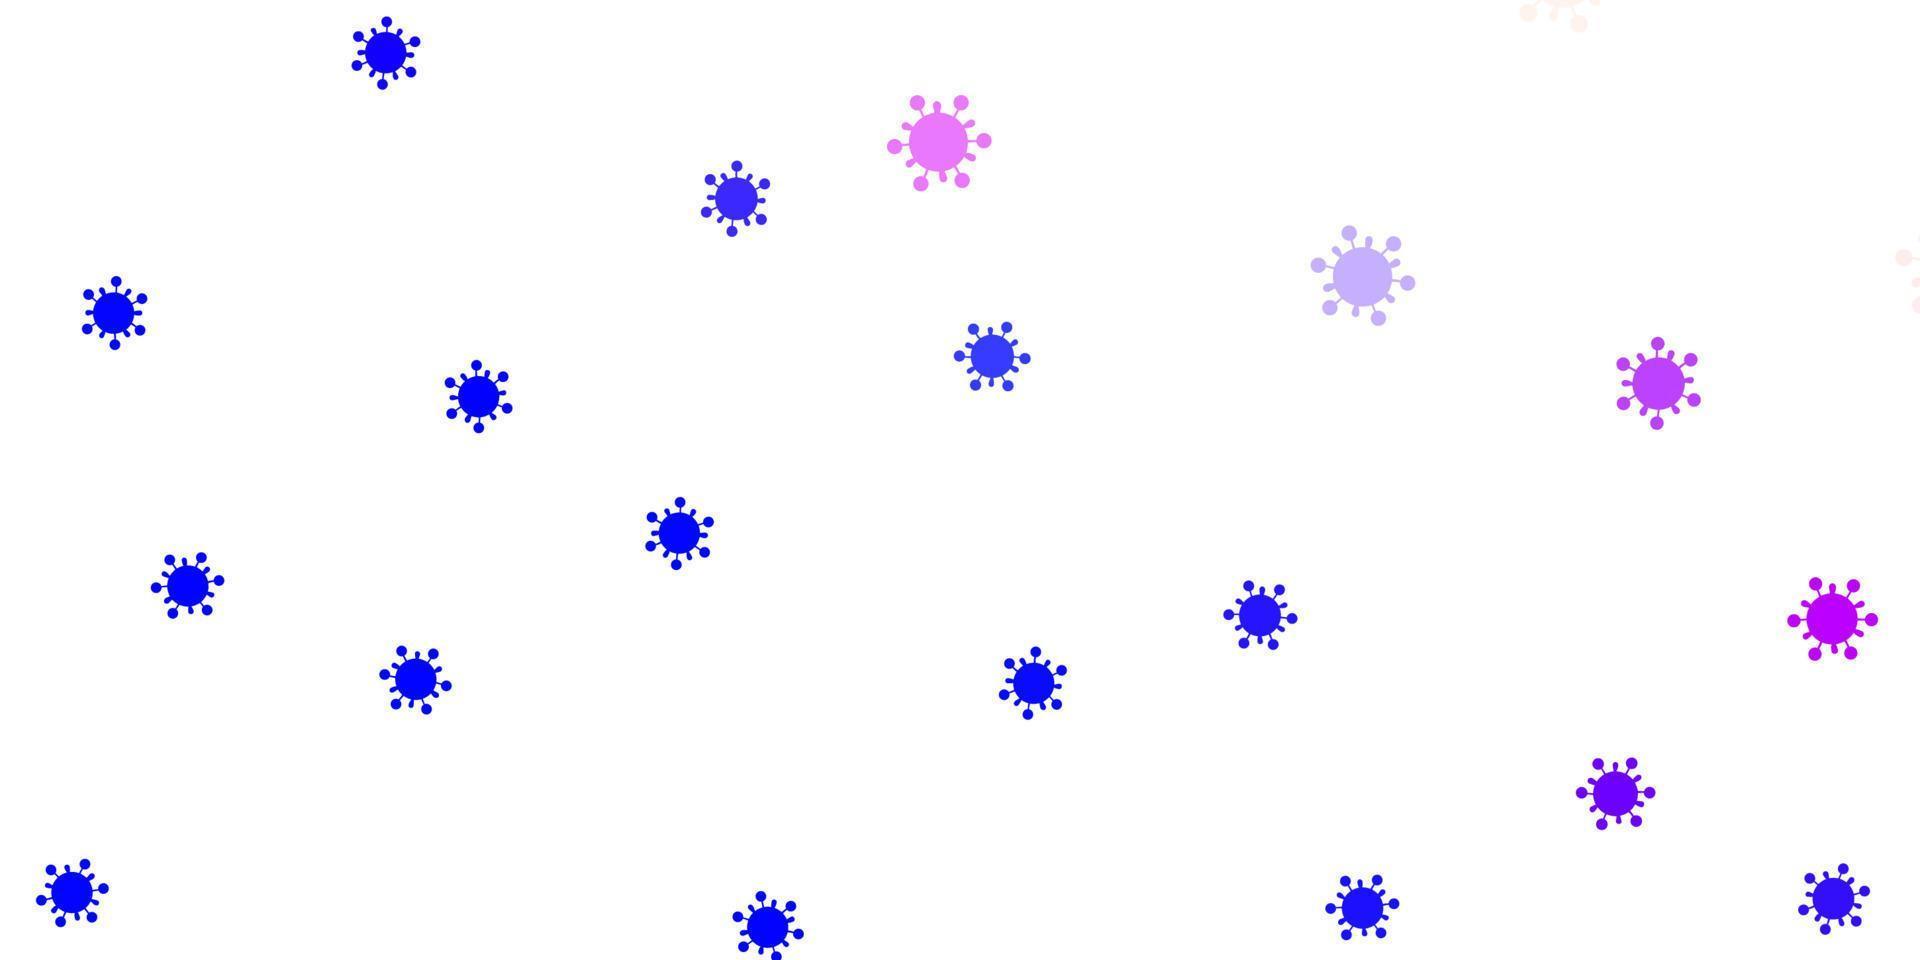 ljusrosa, blå vektorstruktur med sjukdomssymboler. vektor